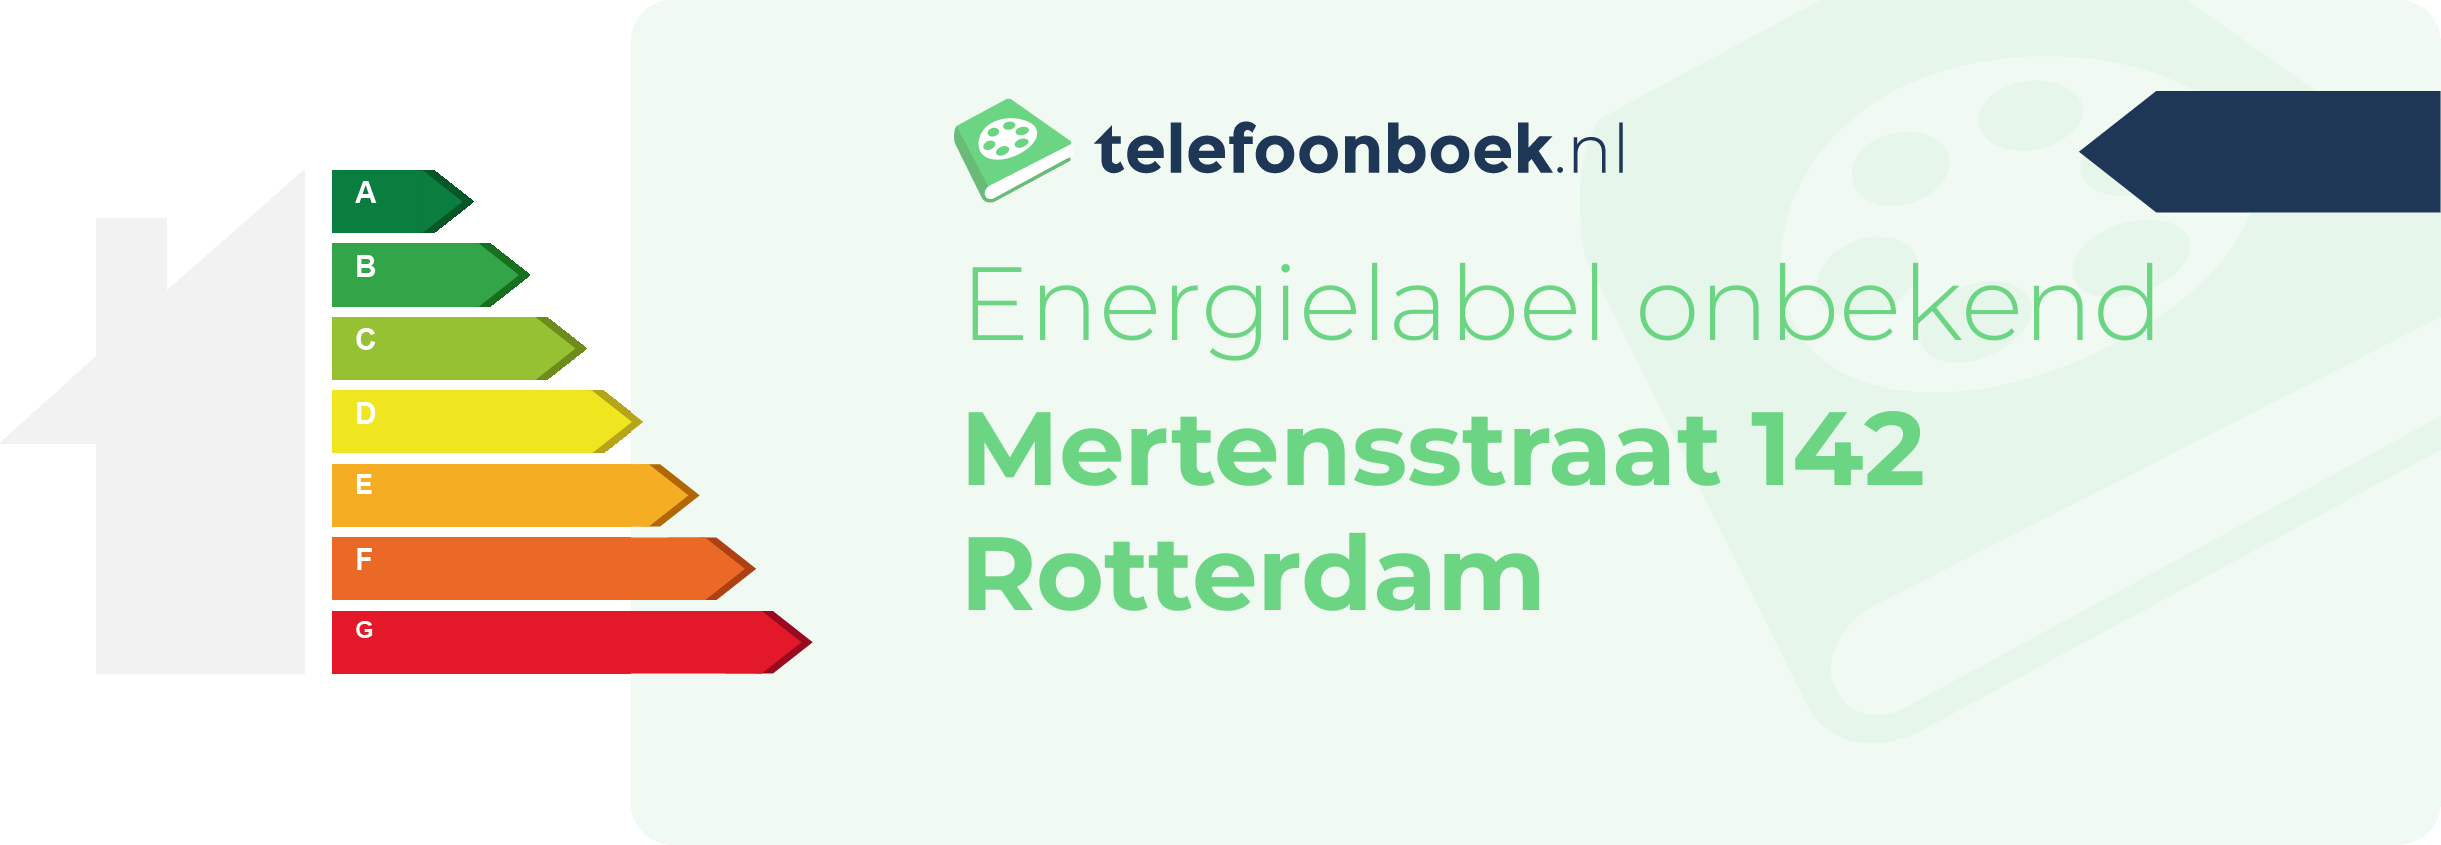 Energielabel Mertensstraat 142 Rotterdam